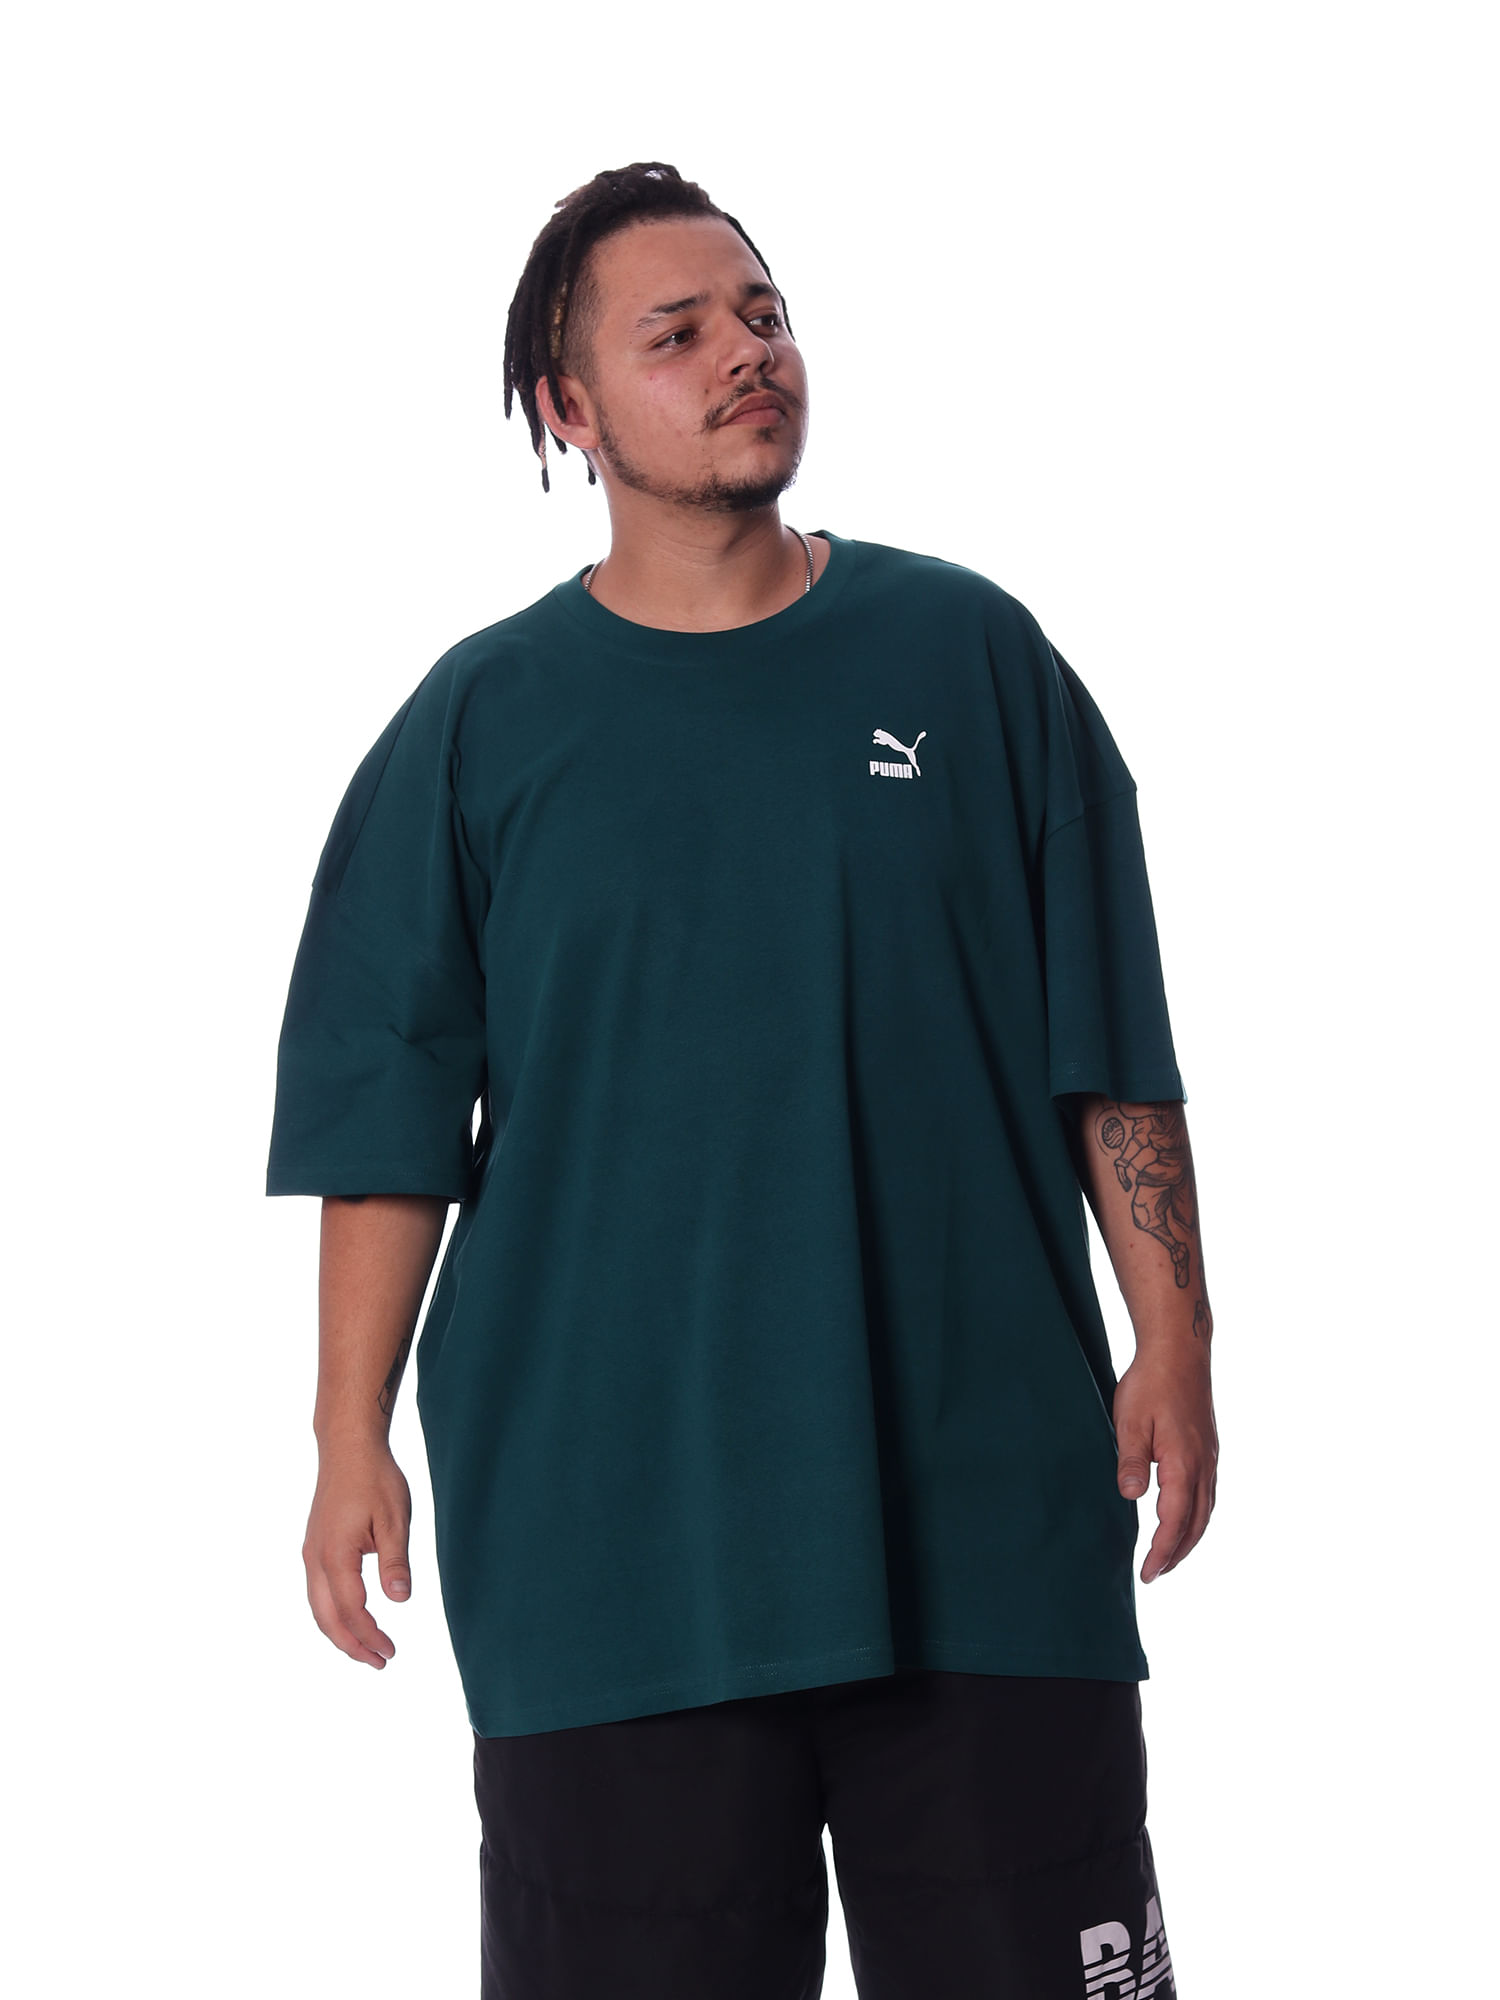 Camiseta-puma-classics-oversized-Verde